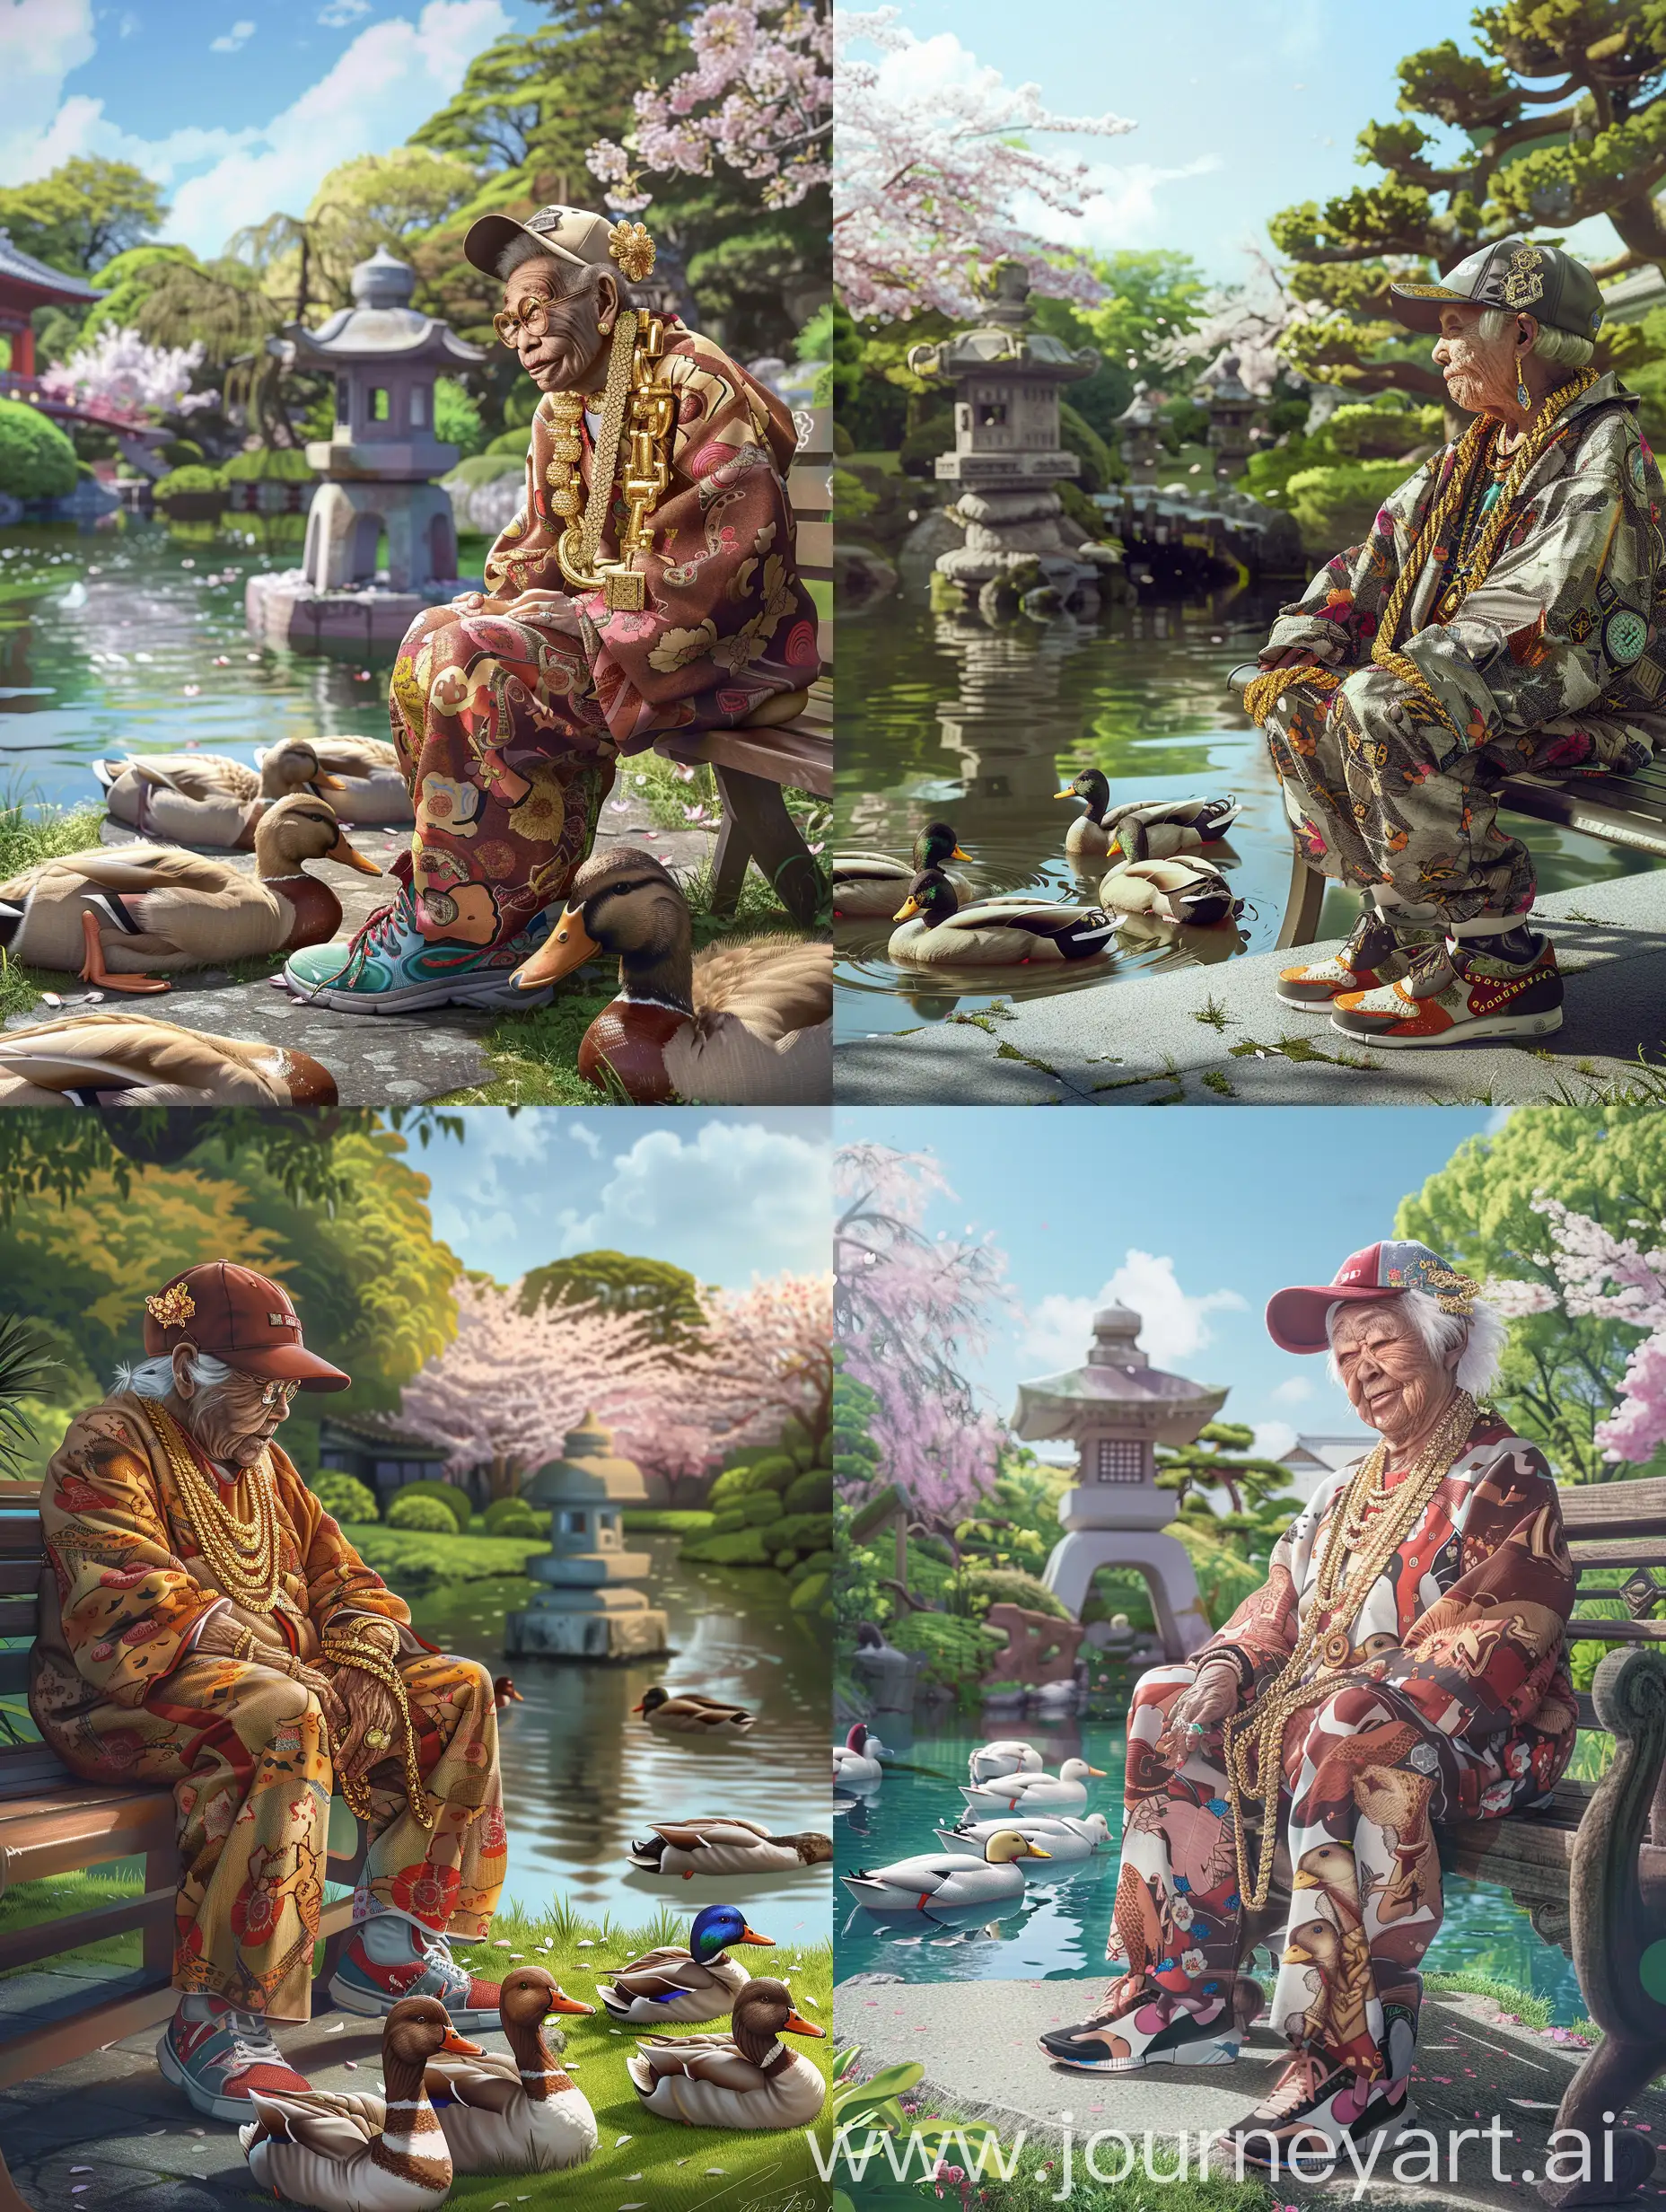 Whimsical-Elderly-Japanese-Rapper-Enjoying-Ducks-in-Serene-Garden